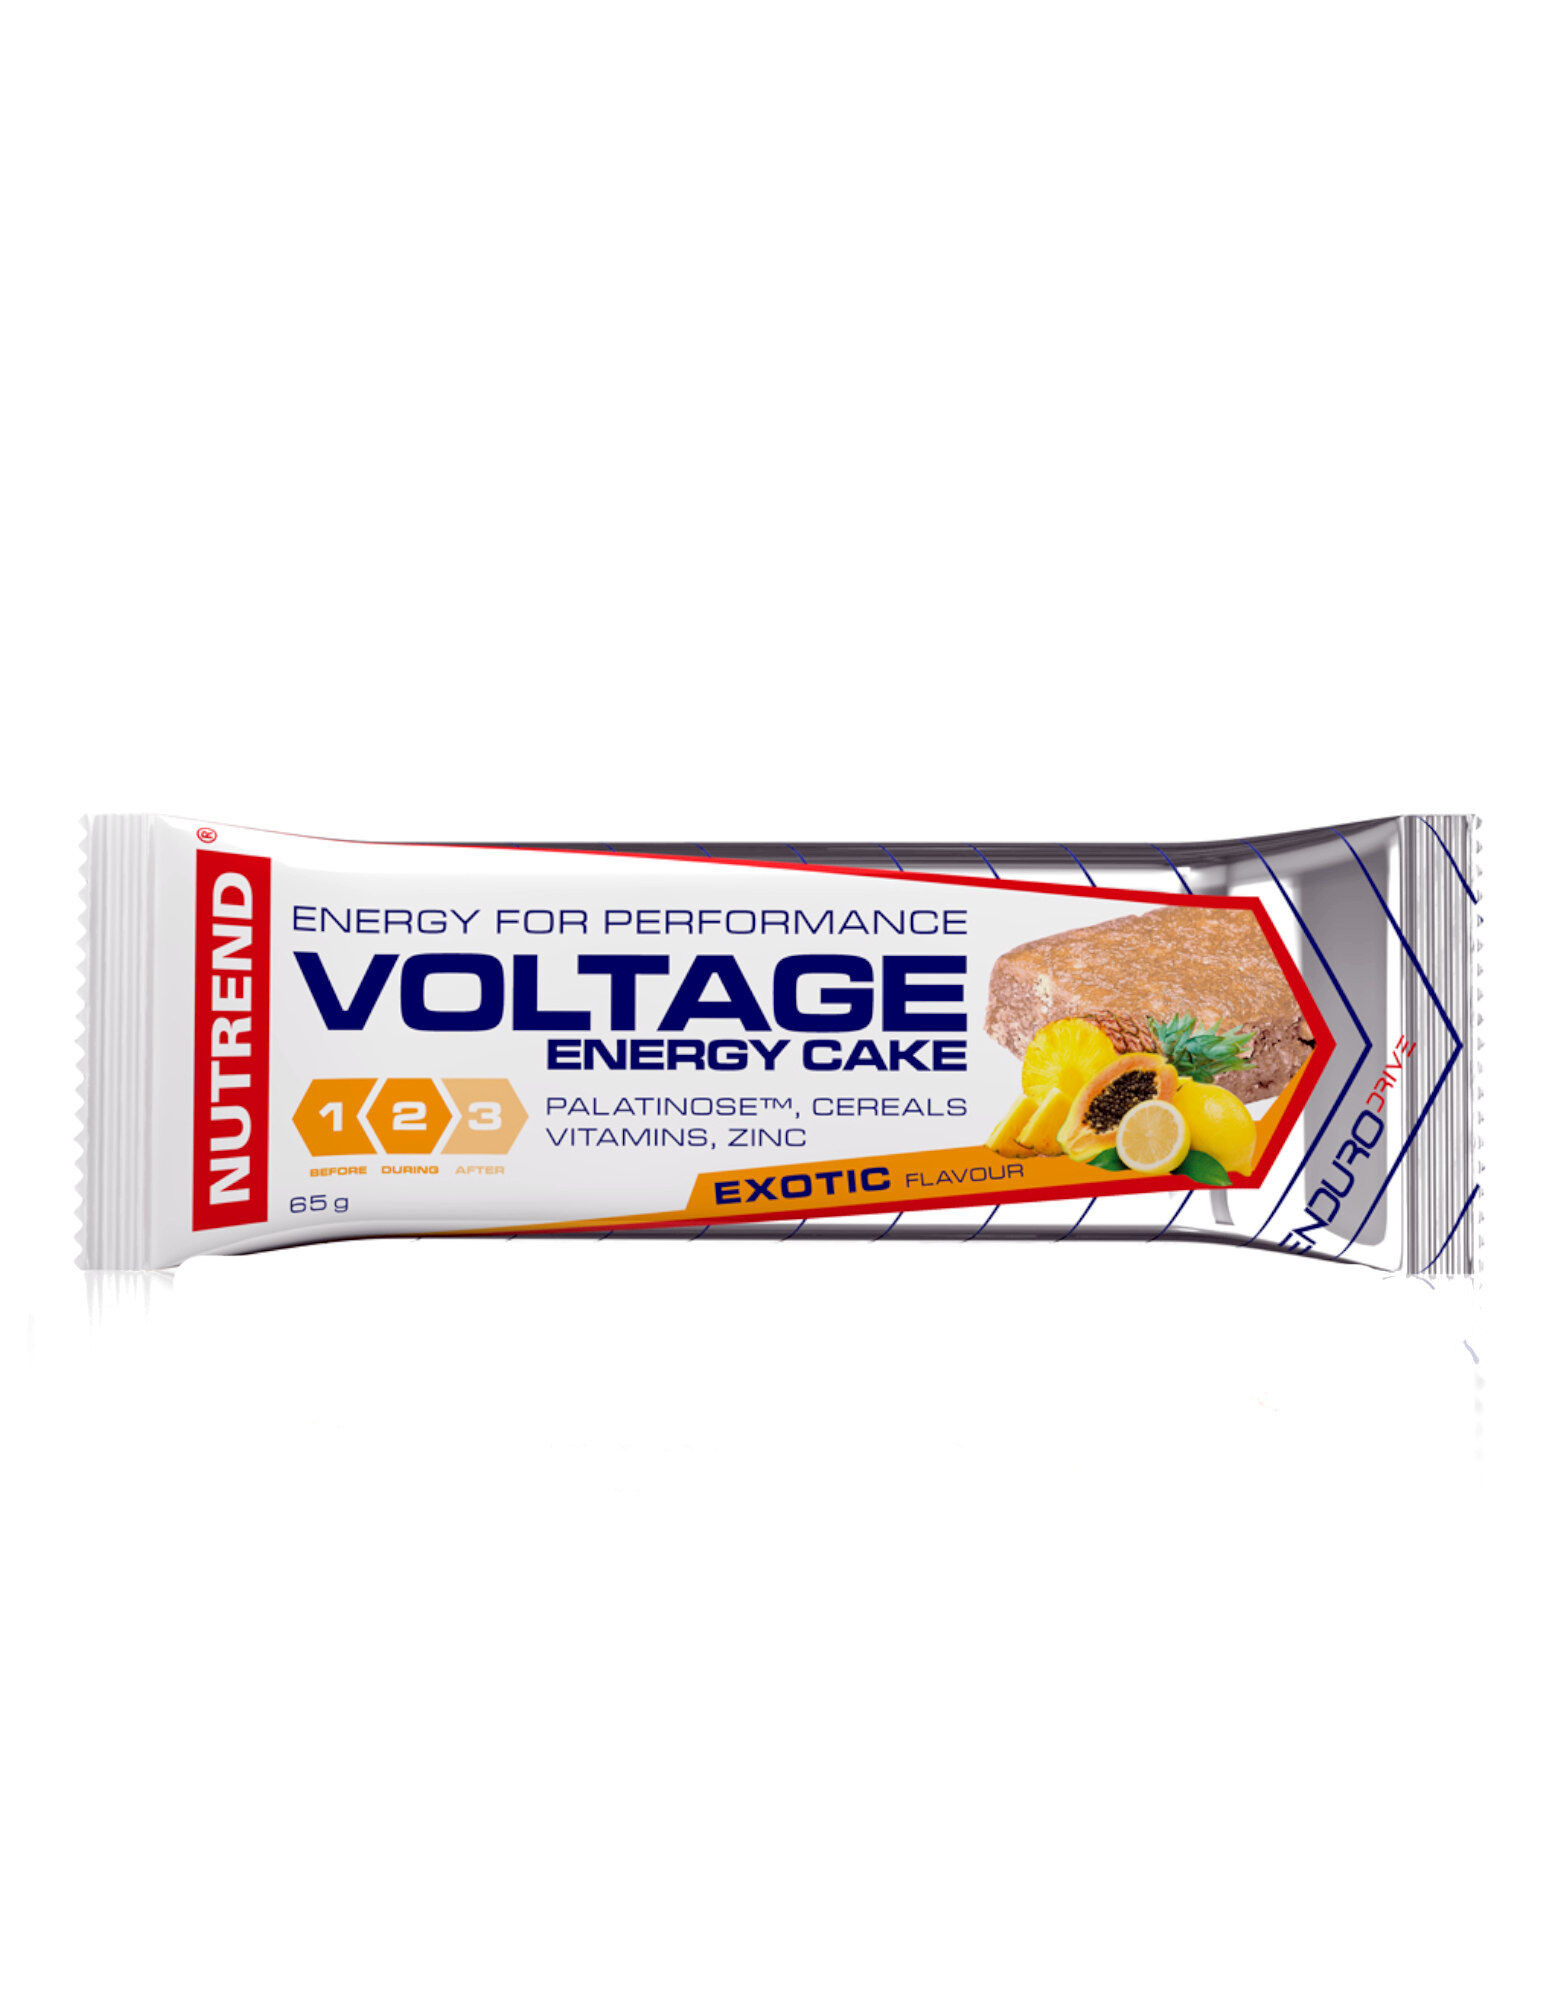 NUTREND Voltage Energy Cake 1 Barretta Da 65 G Esotico